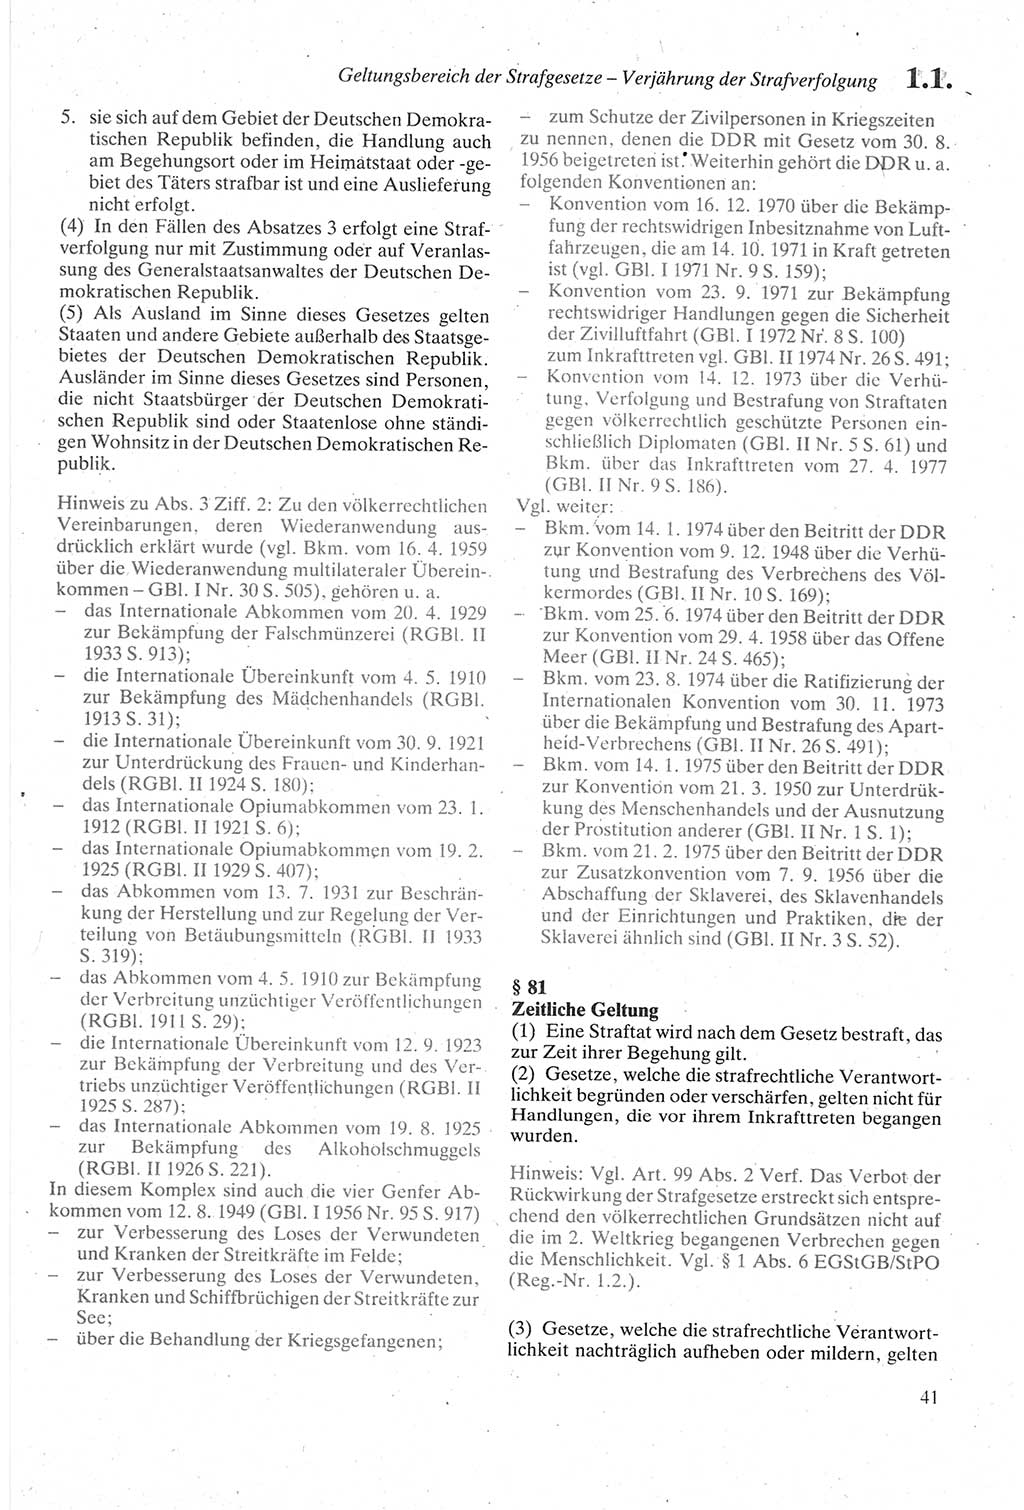 Strafgesetzbuch (StGB) der Deutschen Demokratischen Republik (DDR) sowie angrenzende Gesetze und Bestimmungen 1979, Seite 41 (StGB DDR Ges. Best. 1979, S. 41)